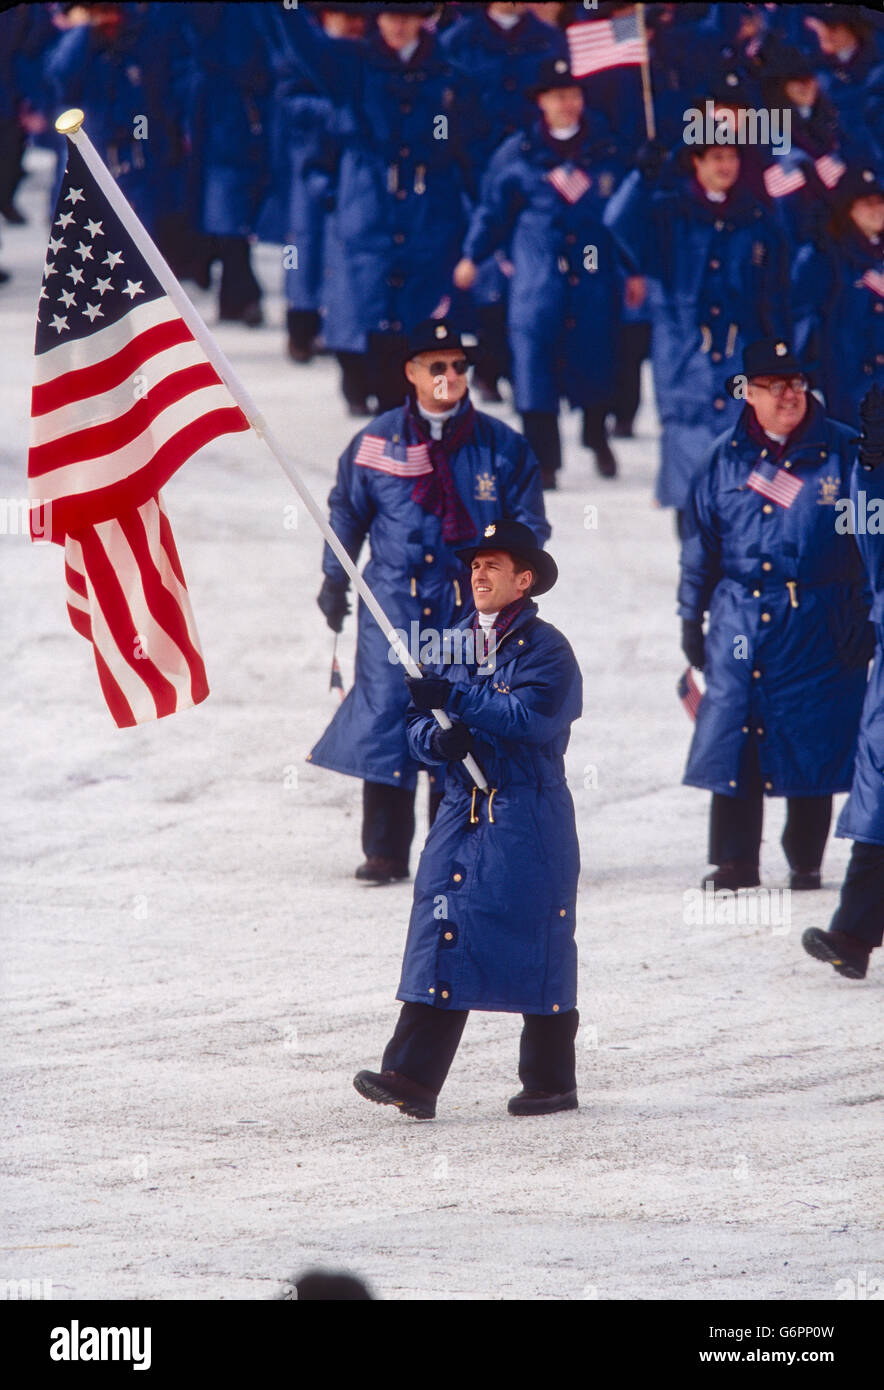 Eric Flaim, abanderado lidera el equipo usa marchando en las ceremonias de inauguración de los Juegos Olímpicos de Invierno de 1998, Nagano, Japón Foto de stock